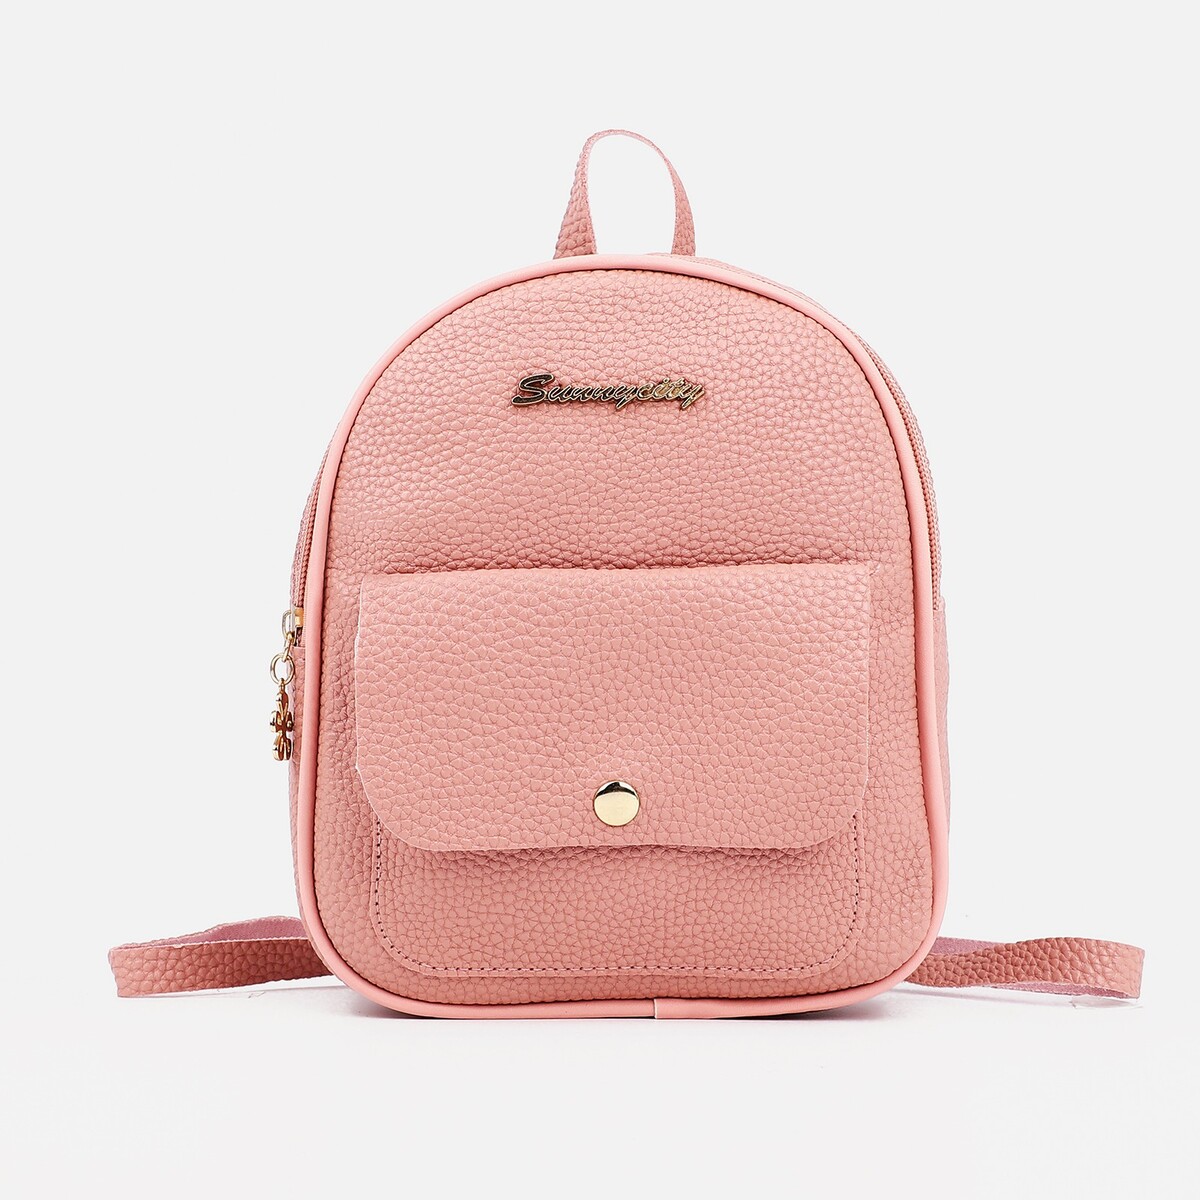 Мини-рюкзак женский из искусственной кожи на молнии, 1 карман, цвет розовый рюкзак школьный из текстиля на молнии наружный карман сиреневый розовый